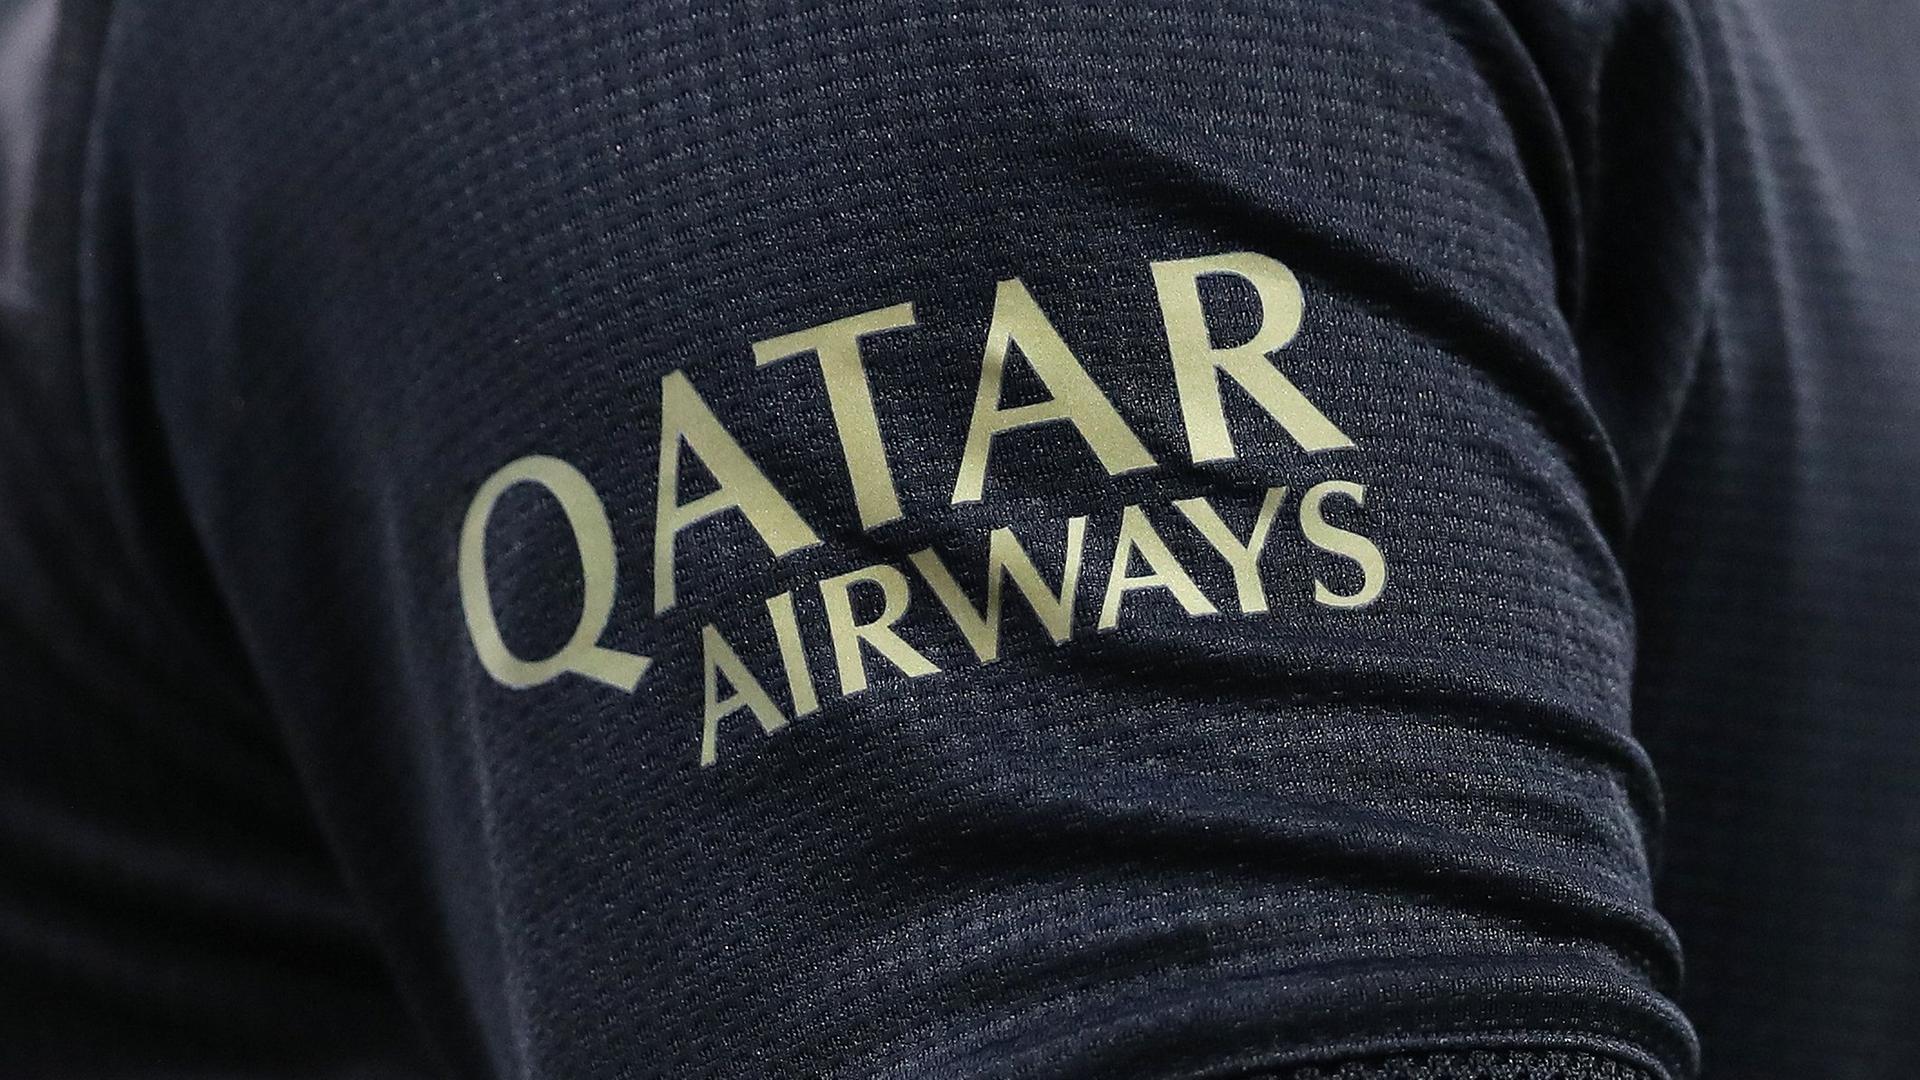 Fußballtrikot mit dem Sponsor Qatar Airways auf dem Ärmel des Fußball-Bundesligisten Bayern München. Das Shirt ist schwarz, das Logo ist gold.